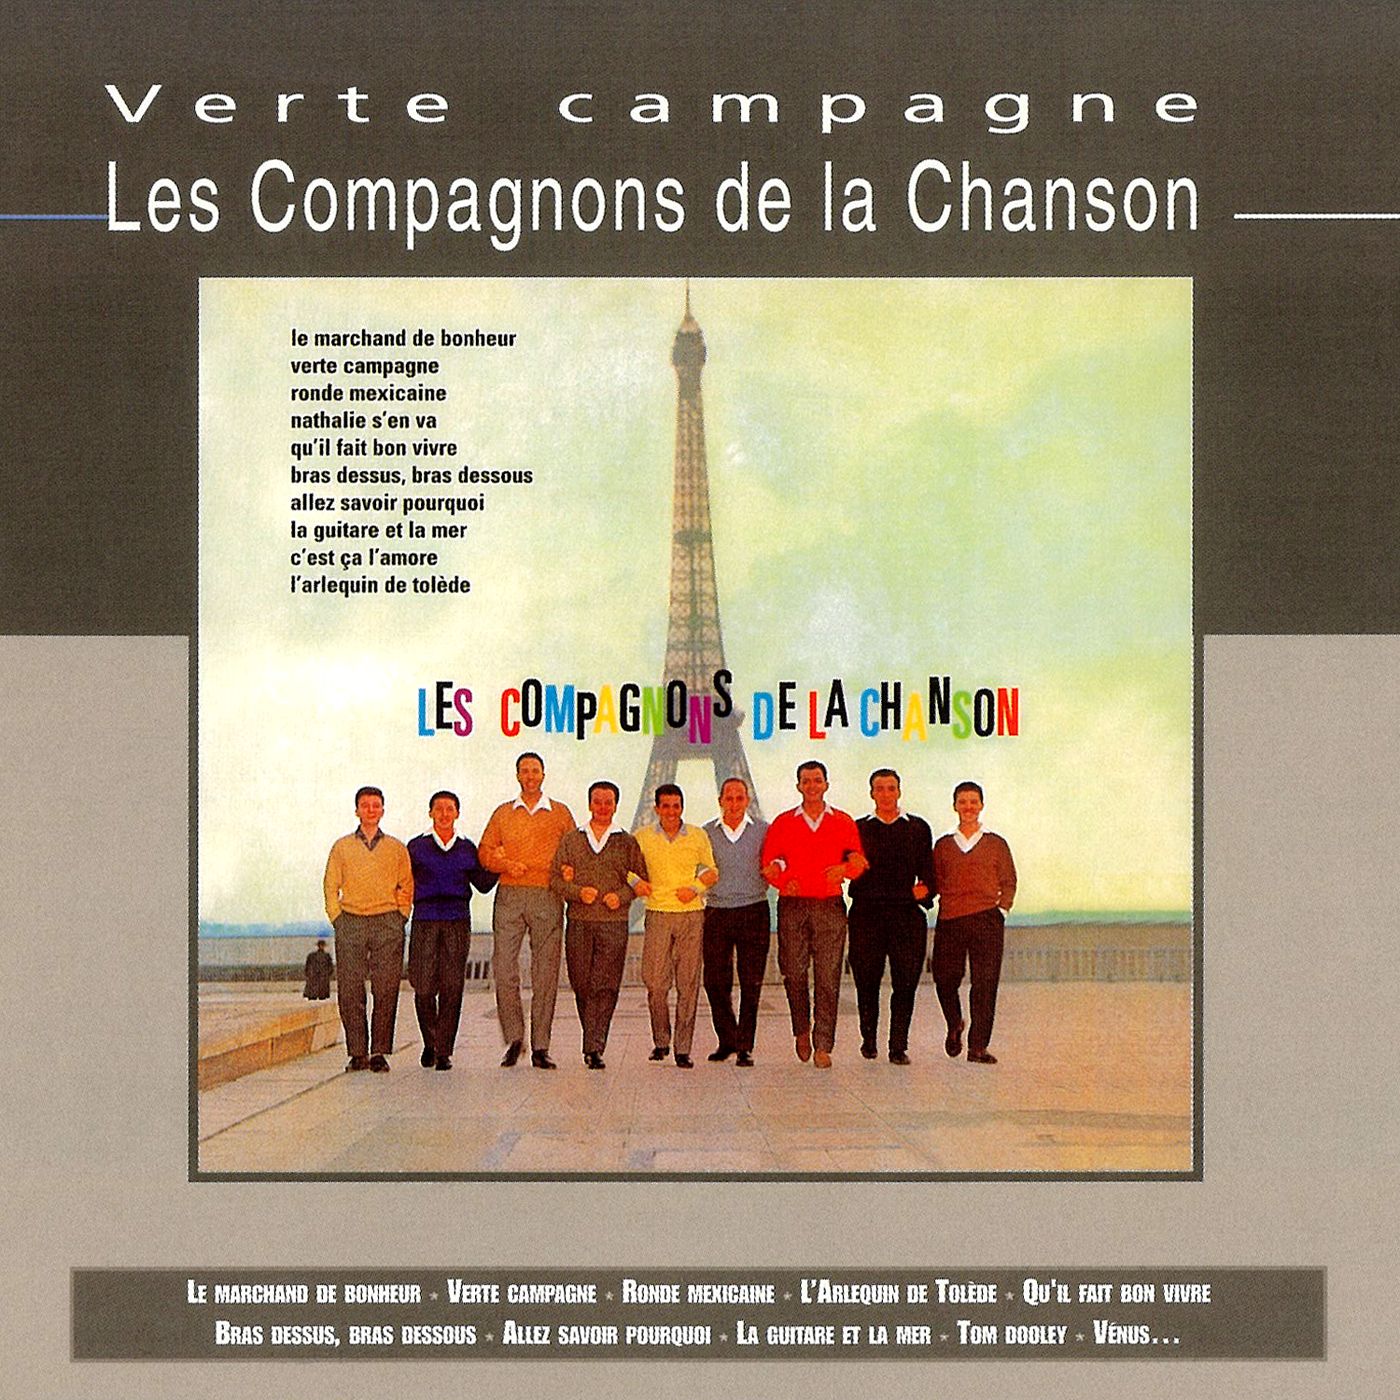 Les Compagnons de la Chanson - Verte Campagne картинки